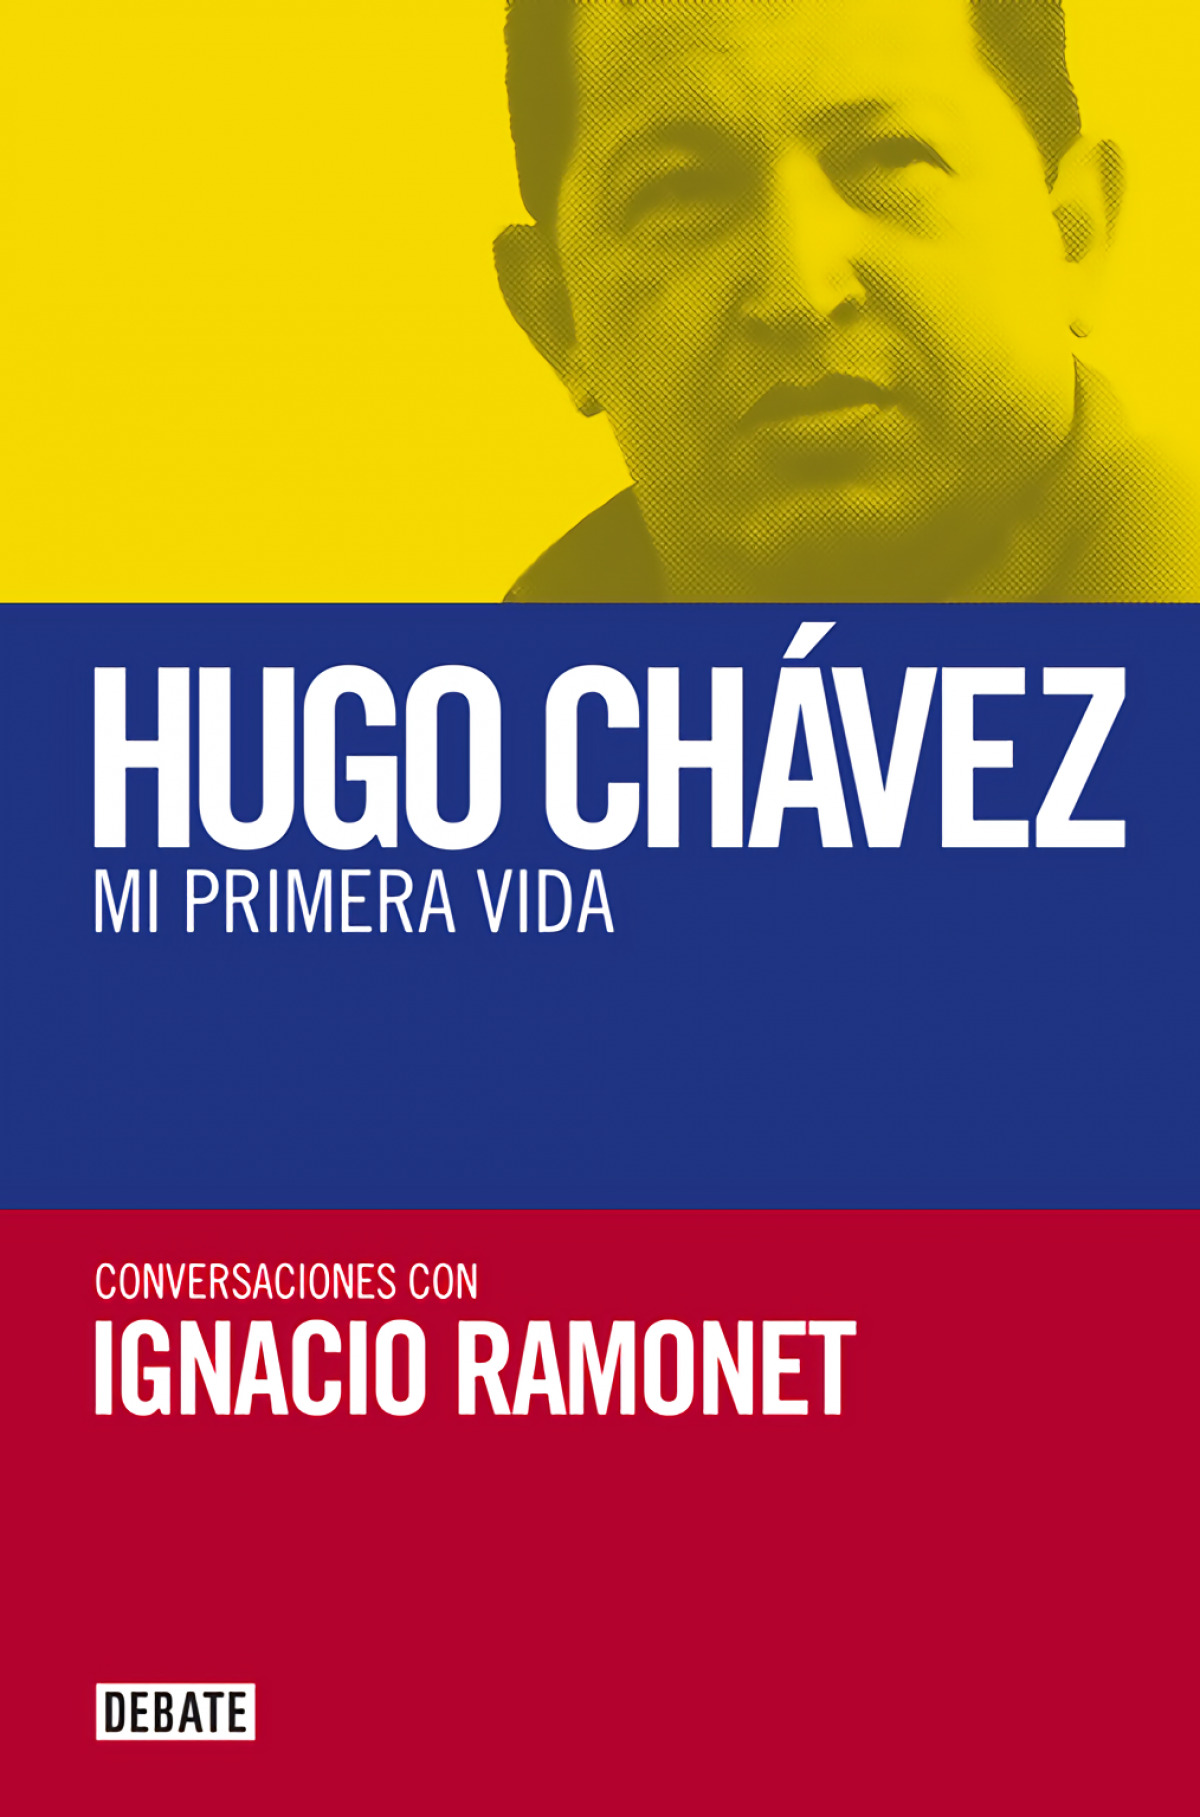 Hugo Chavez - Ramonet, Ignacio